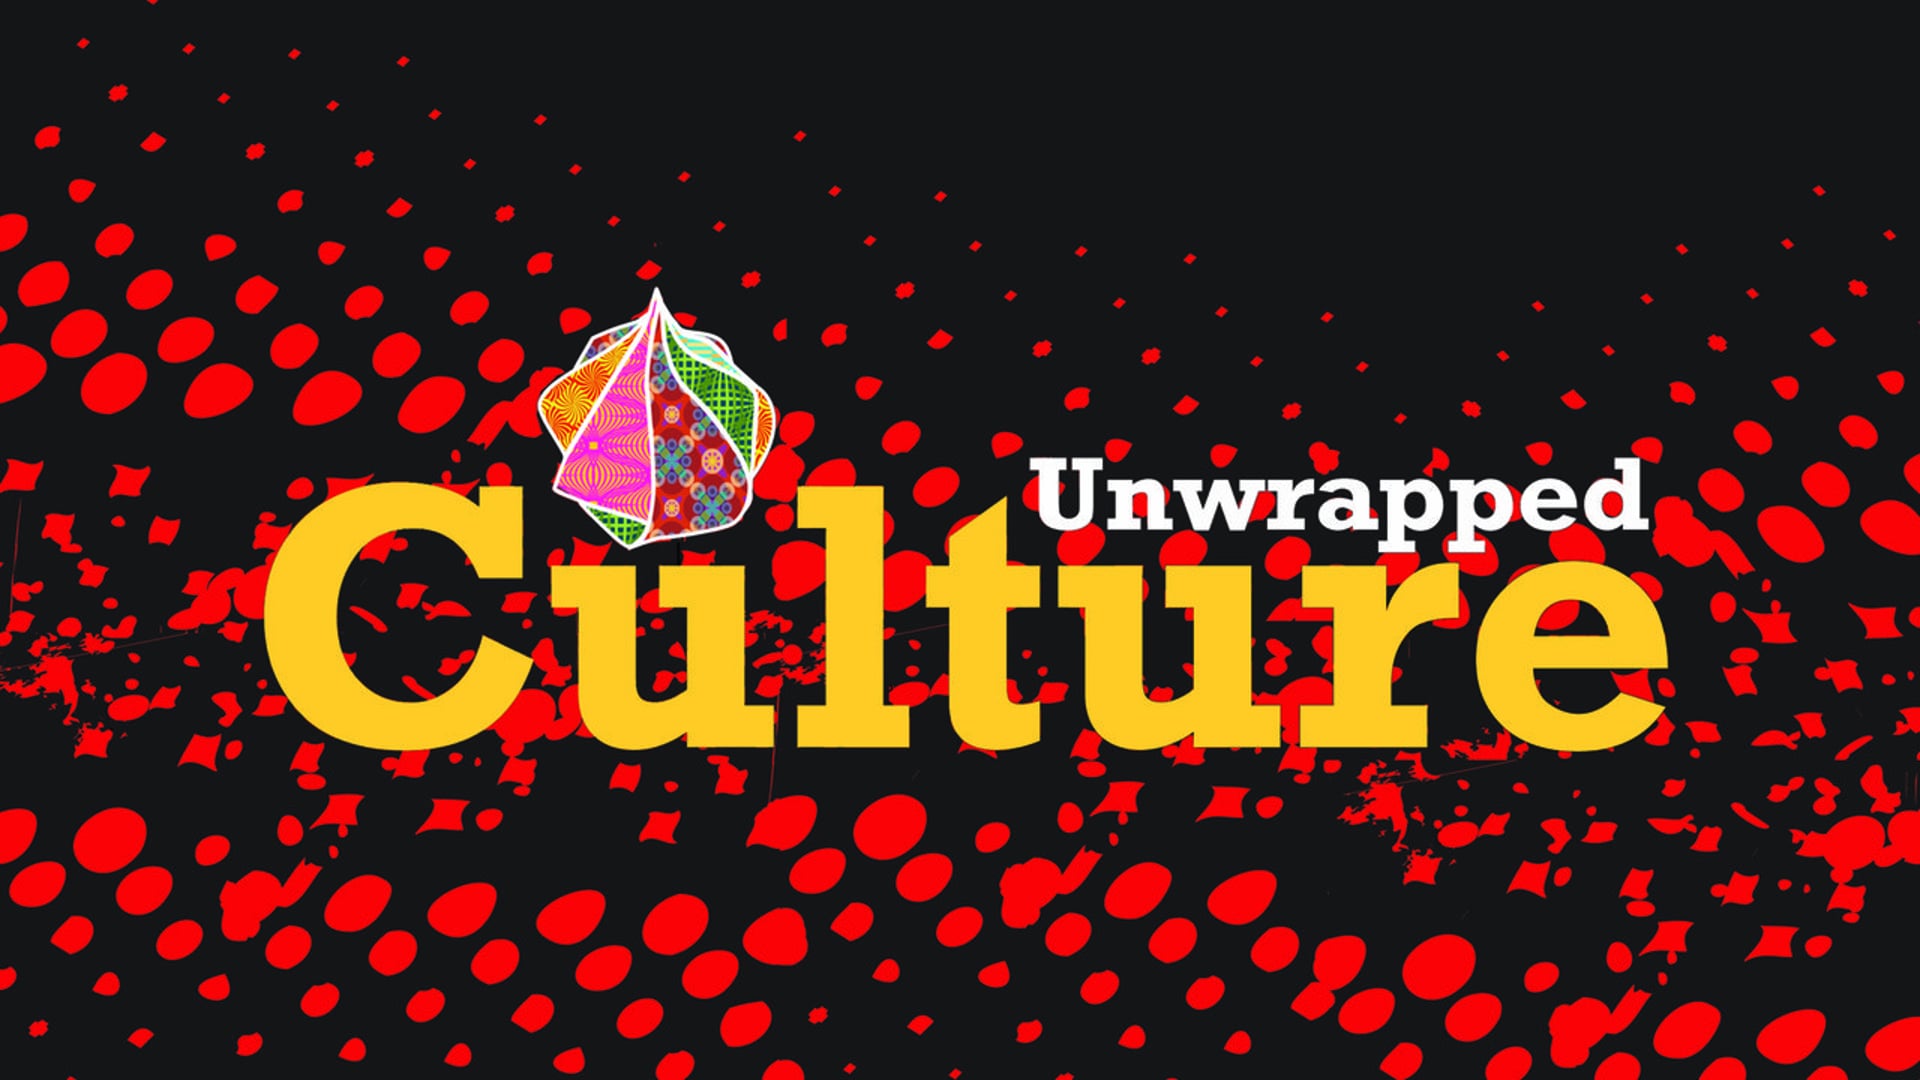 Youth Culture Festival - Bermuda 2010 ("Culture Unwrapped" Series)